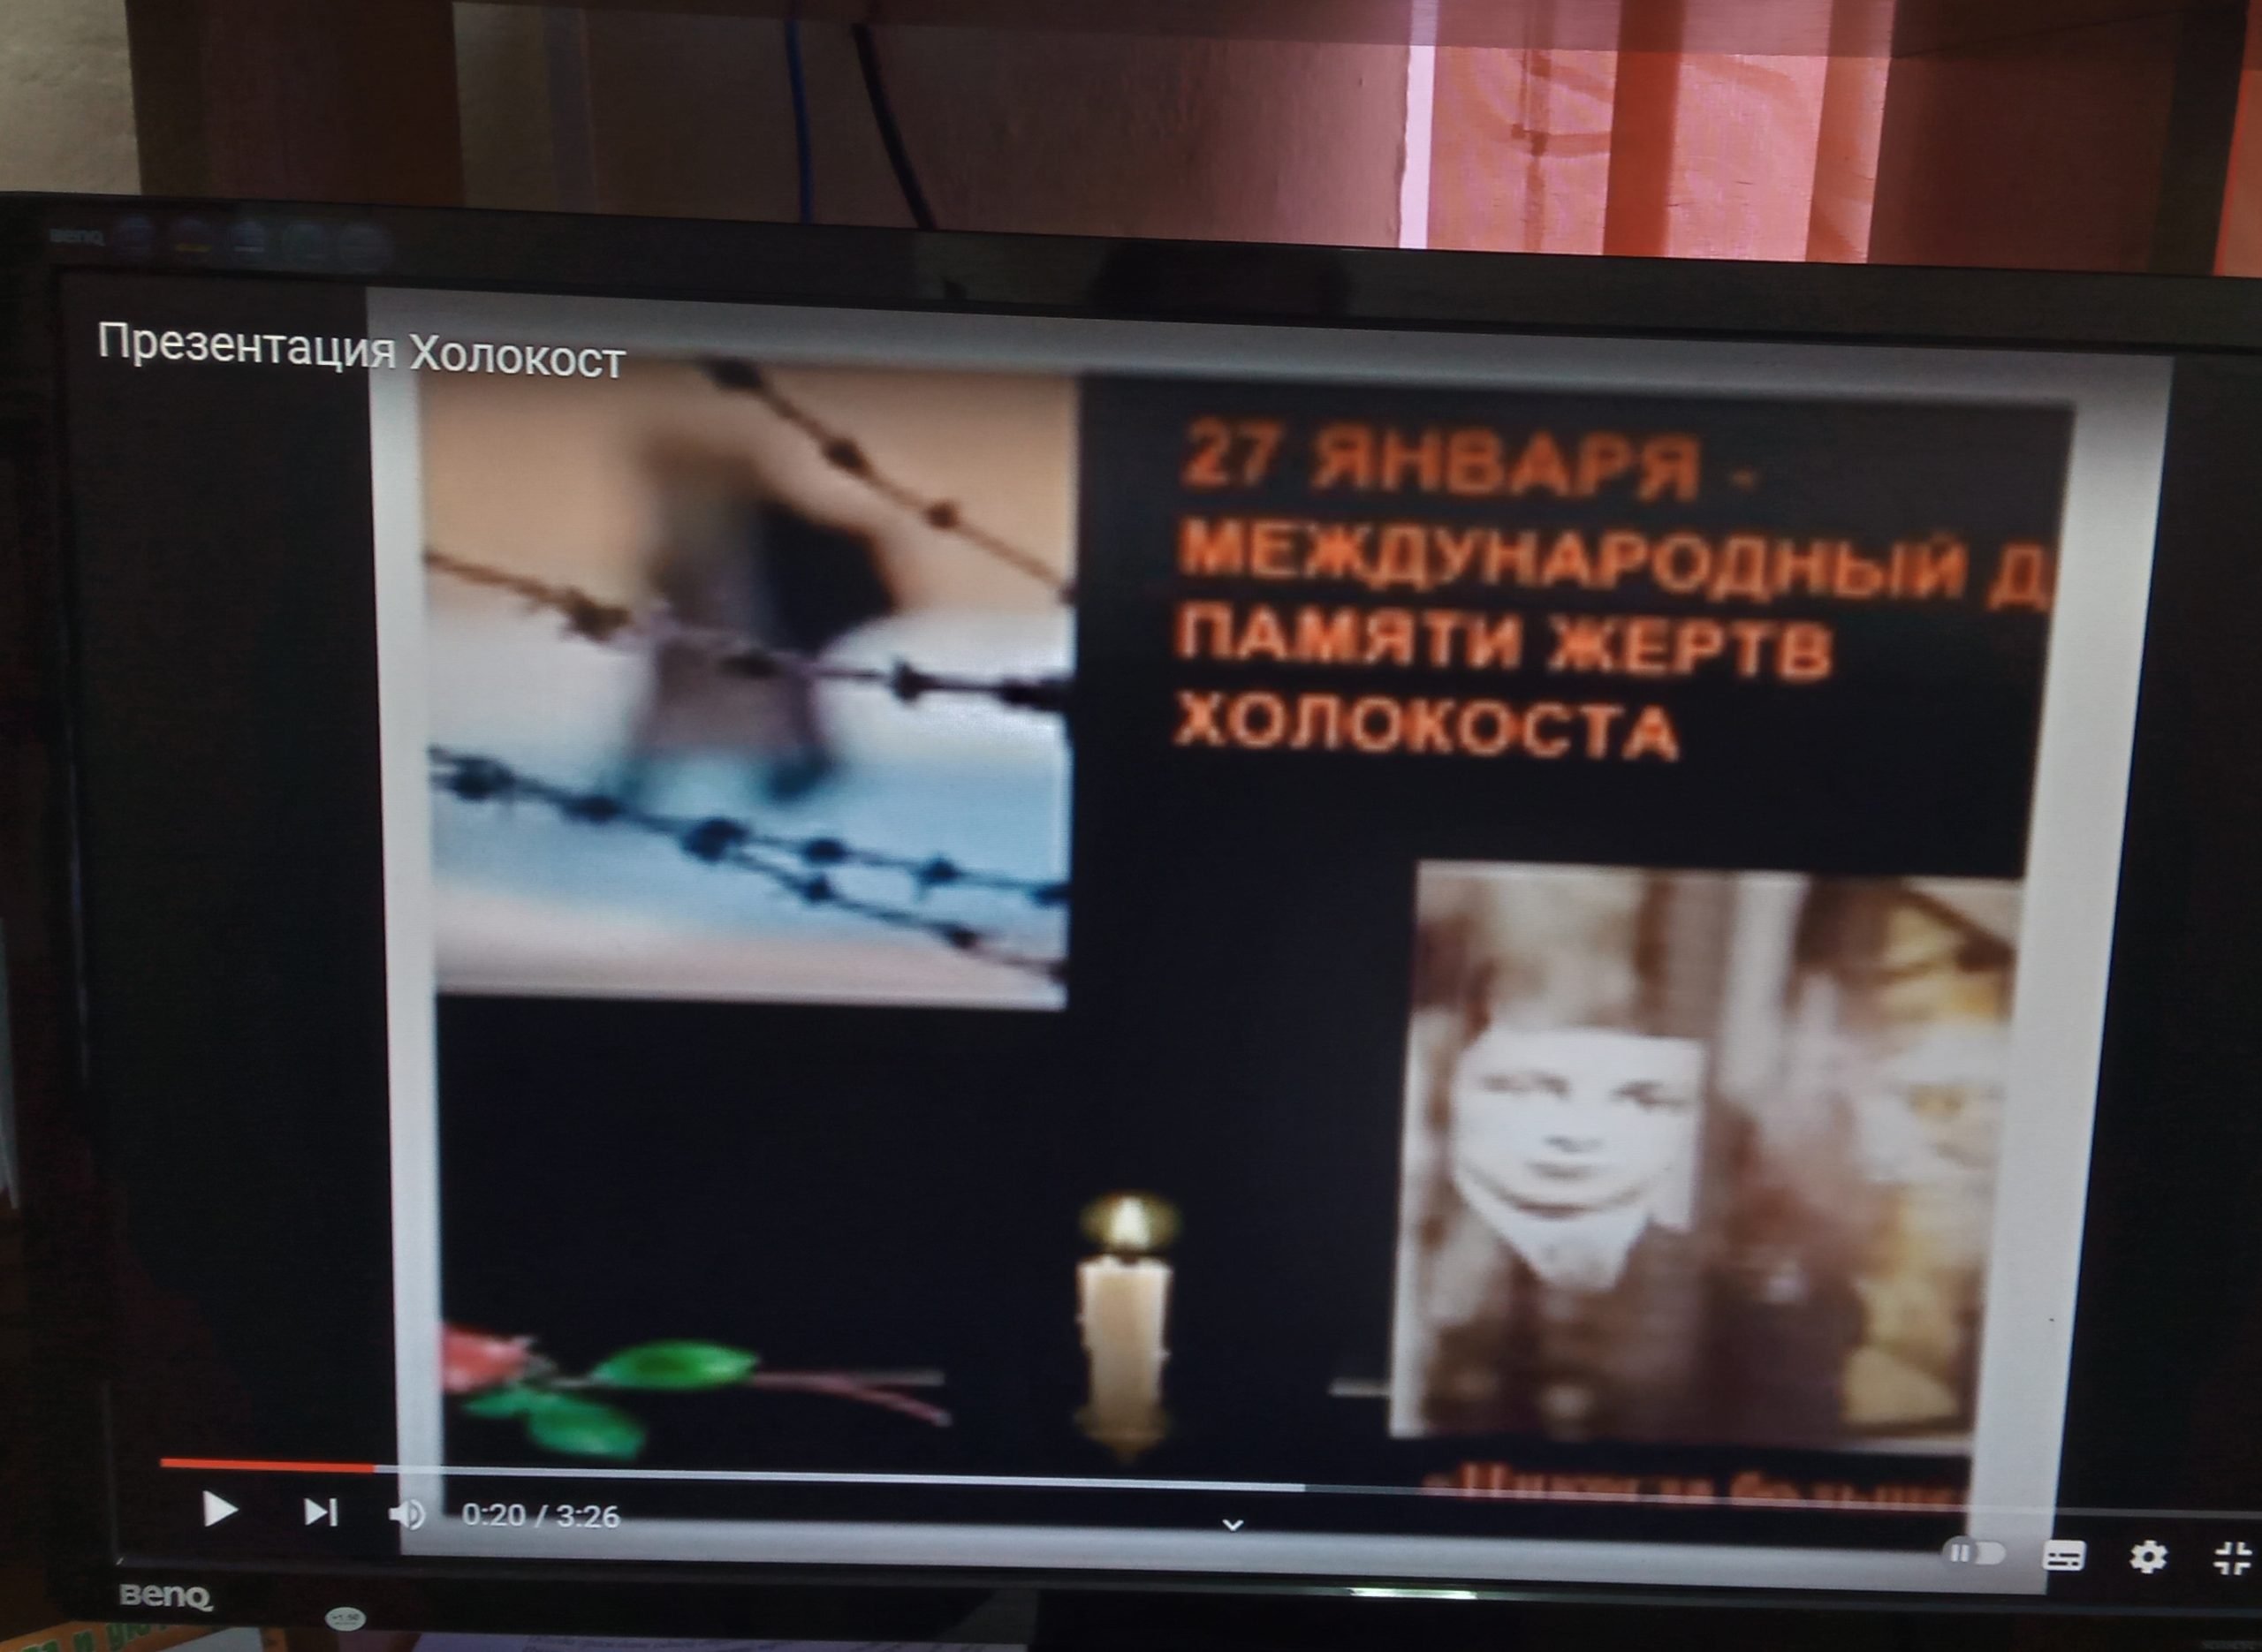 Порно холокост - видео. Смотреть порно холокост - порно видео на city-lawyers.ru